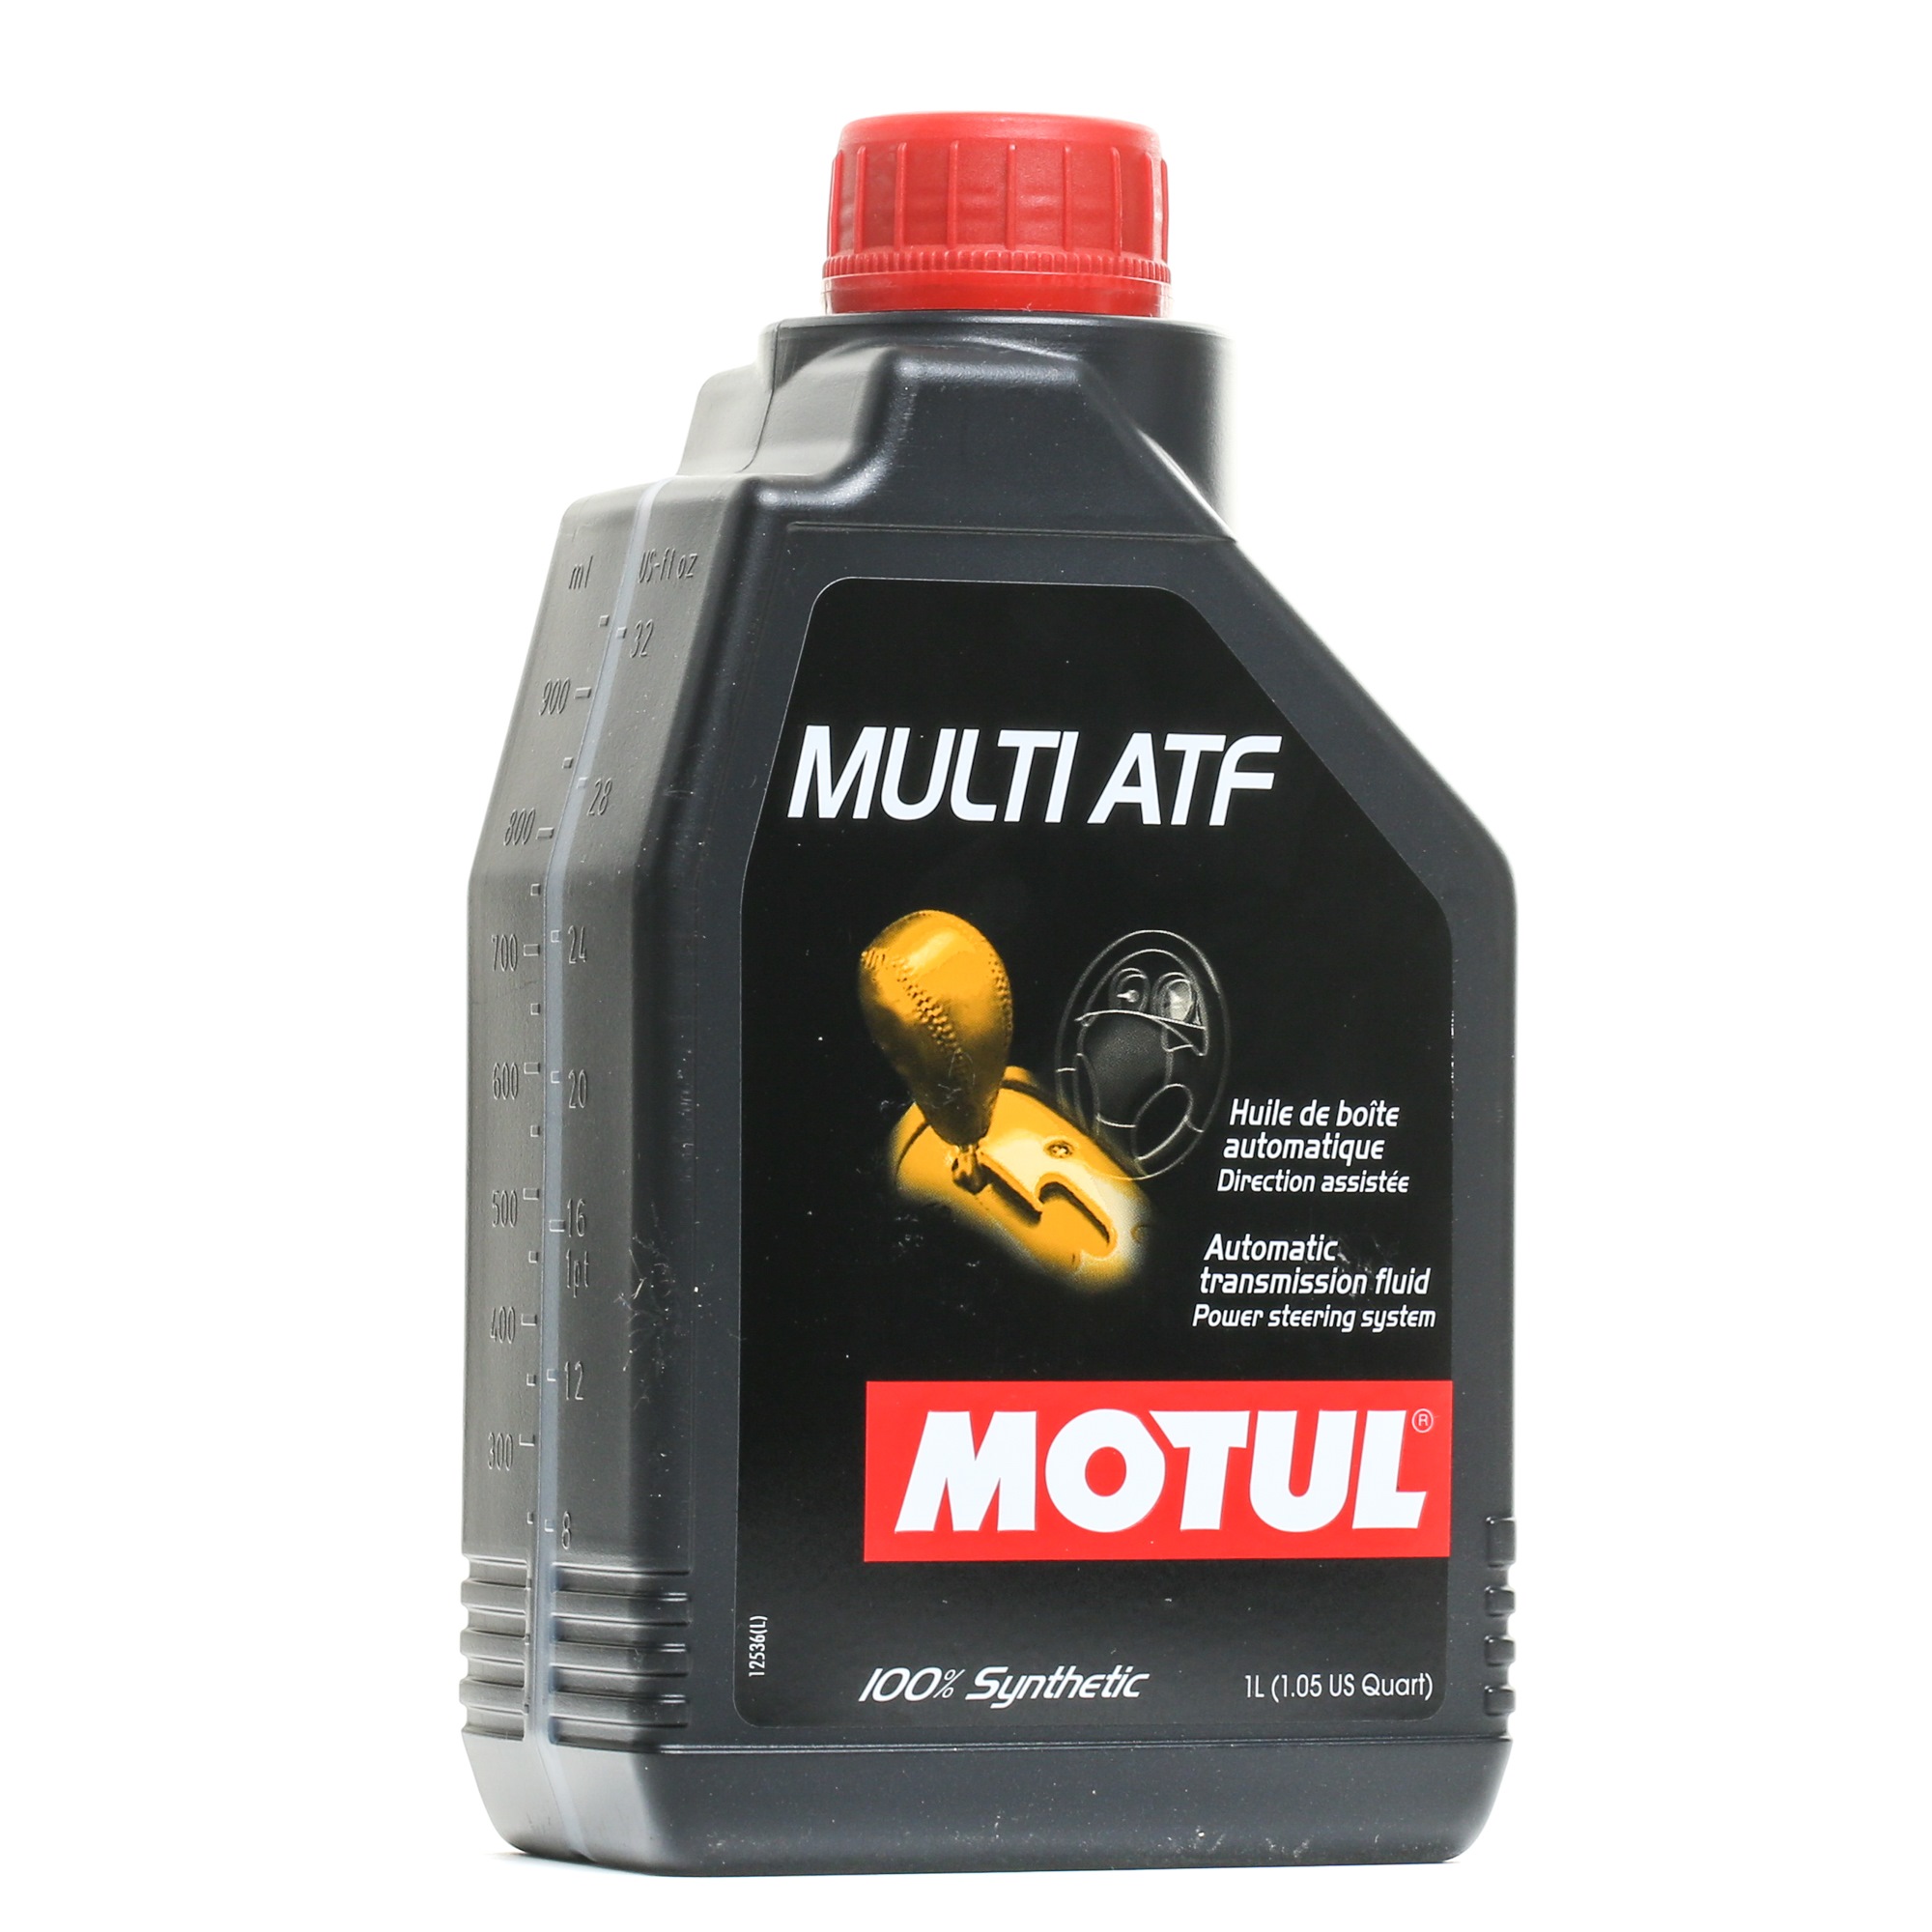 MOTUL MULTI ATF 105784 Automaattivaihteistoöljy ATF III, 1l, Punainen